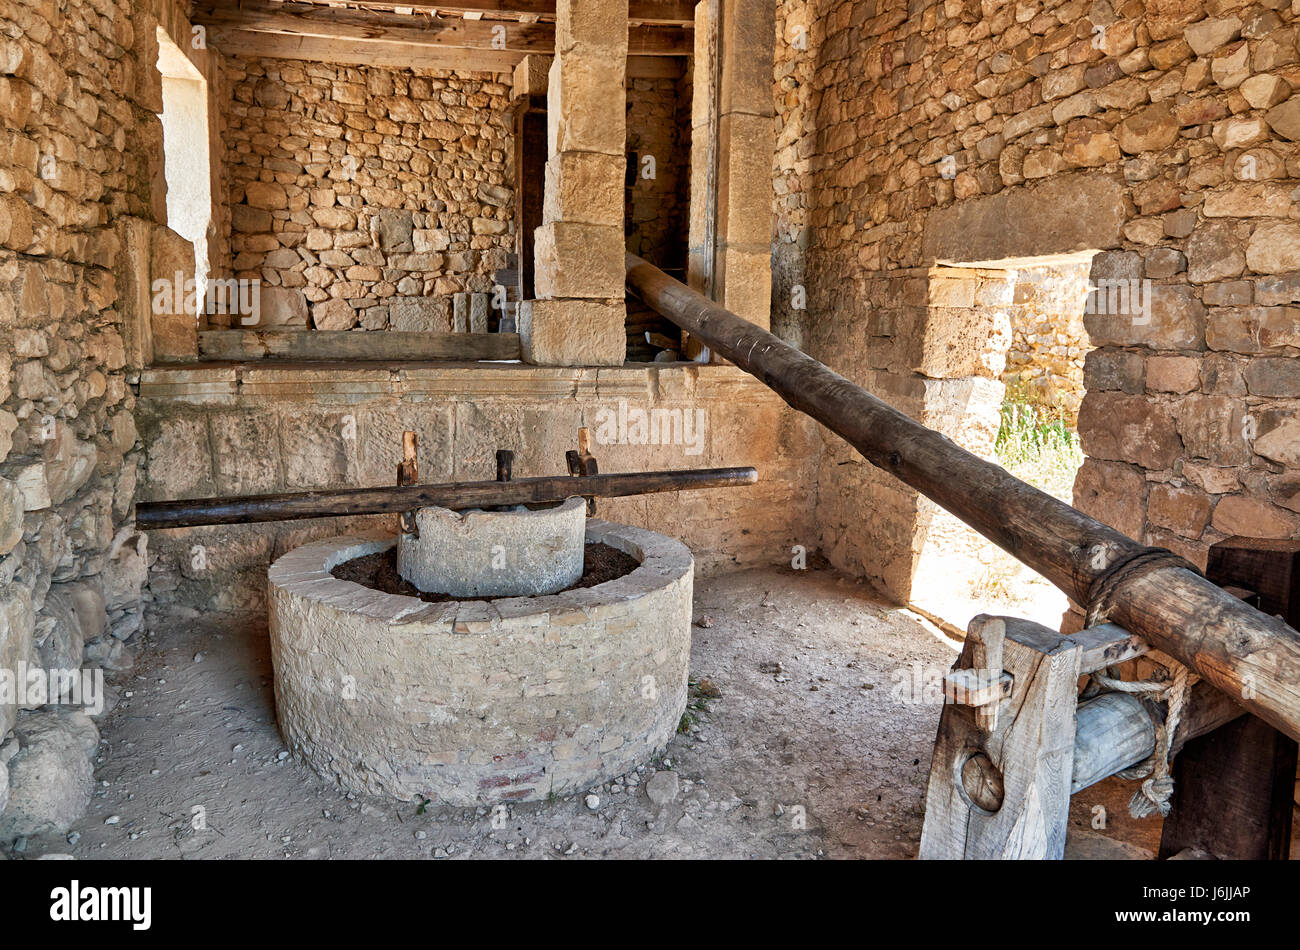 rekonstruierten römischen Olive press, römische Ausgrabungen in Volubilis, Marokko, Afrika Stockfoto